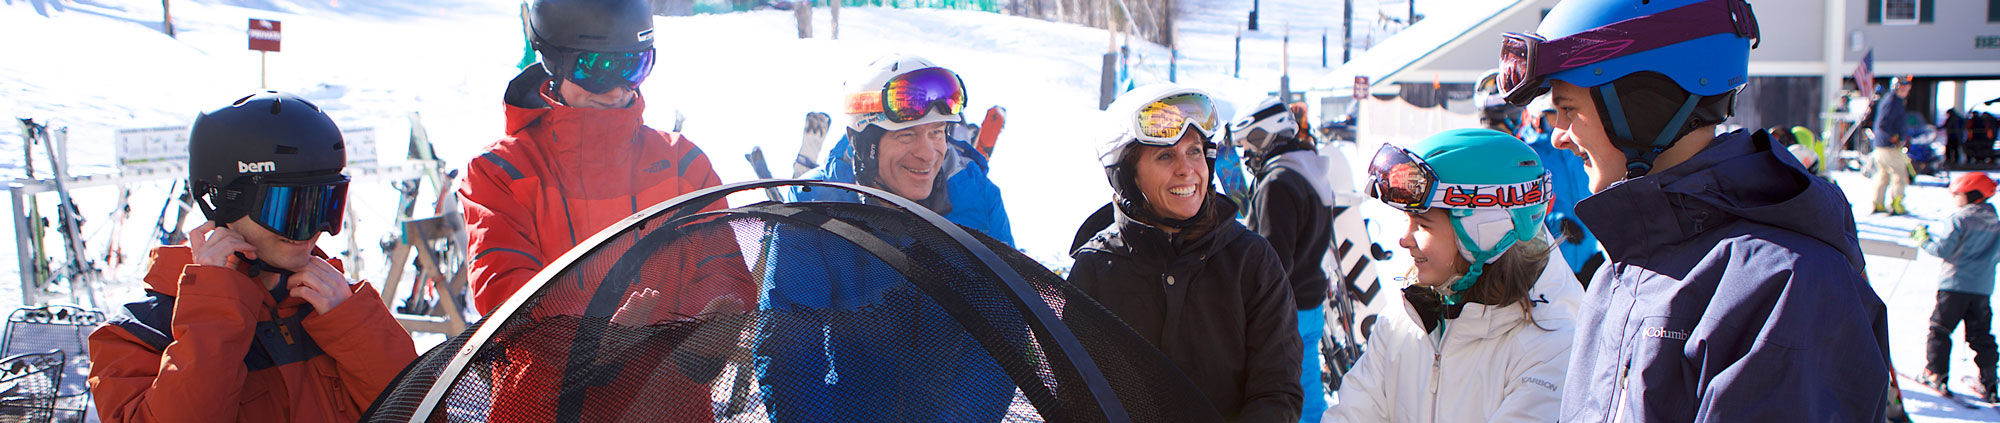 A family at a ski mountain